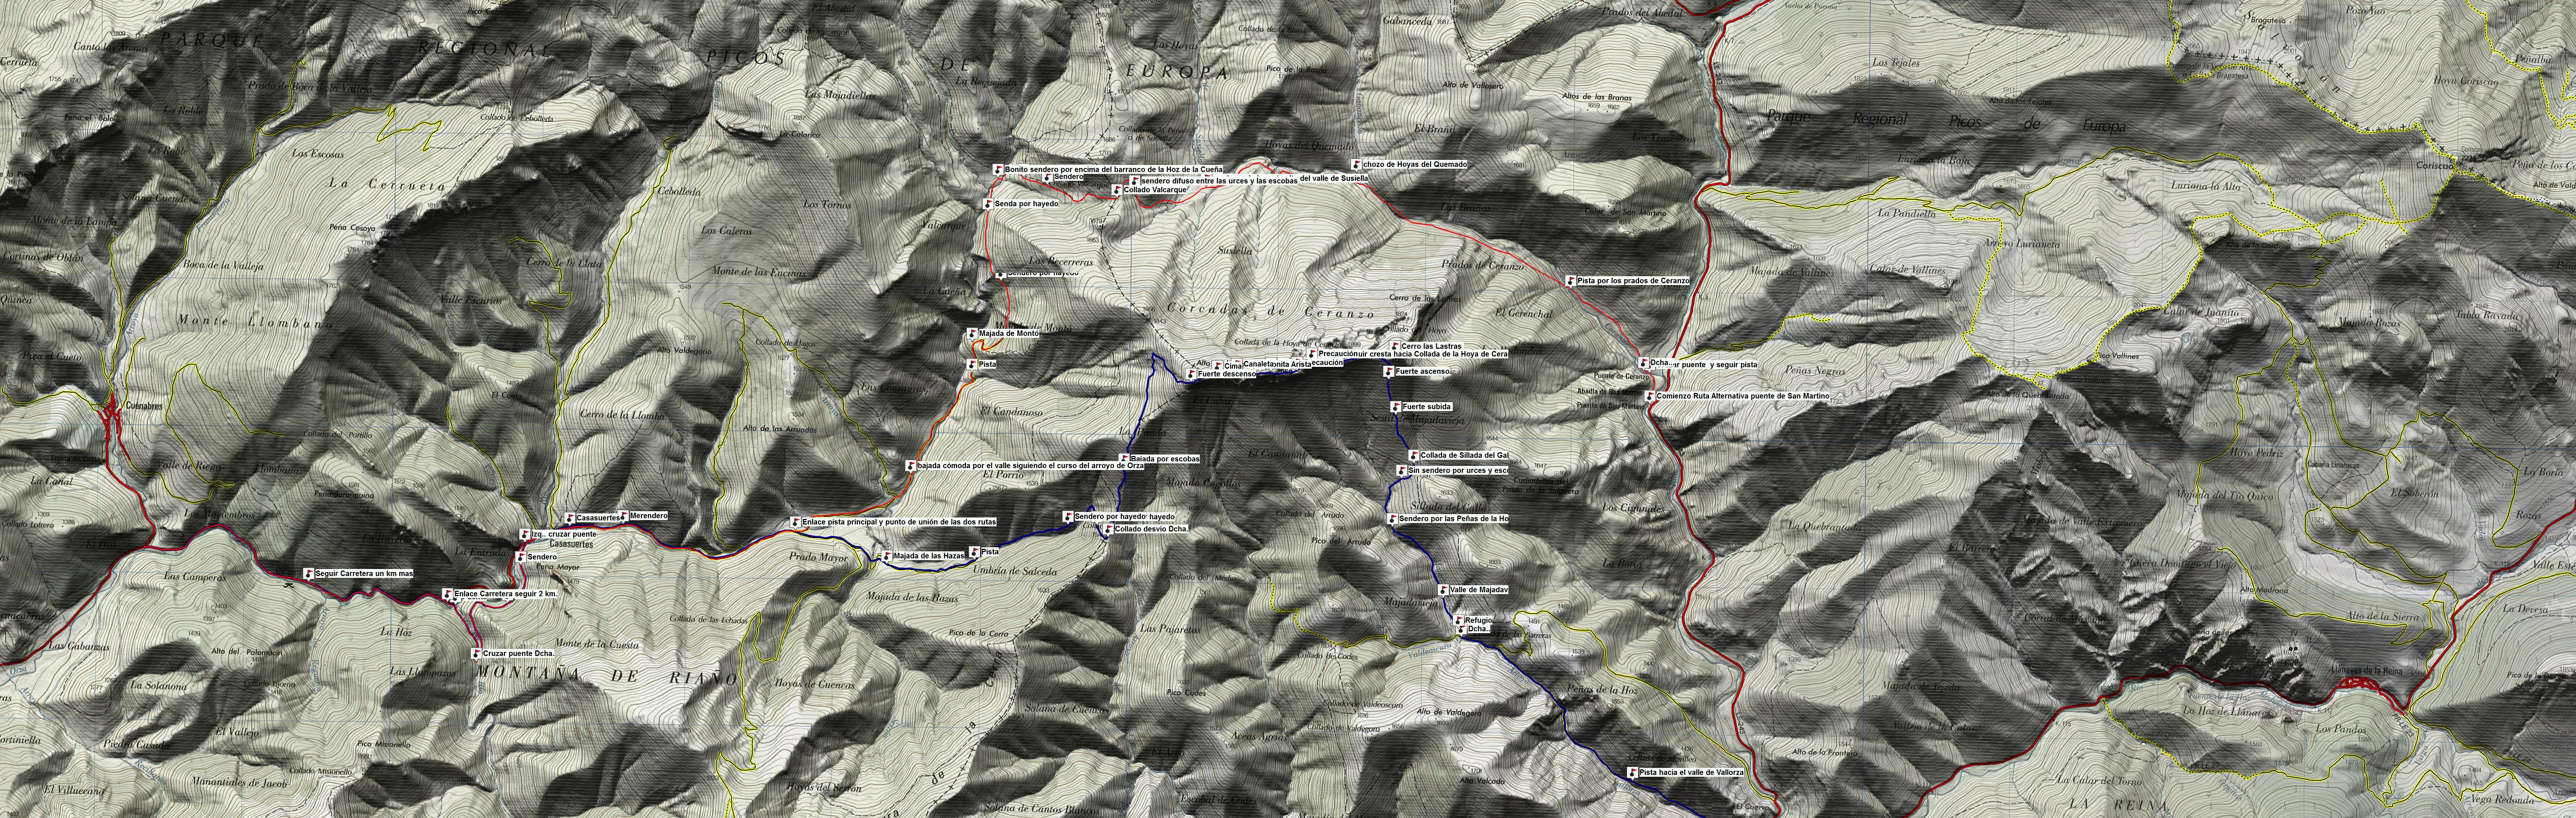 Mapa y Waypoints RUTAS SABADO